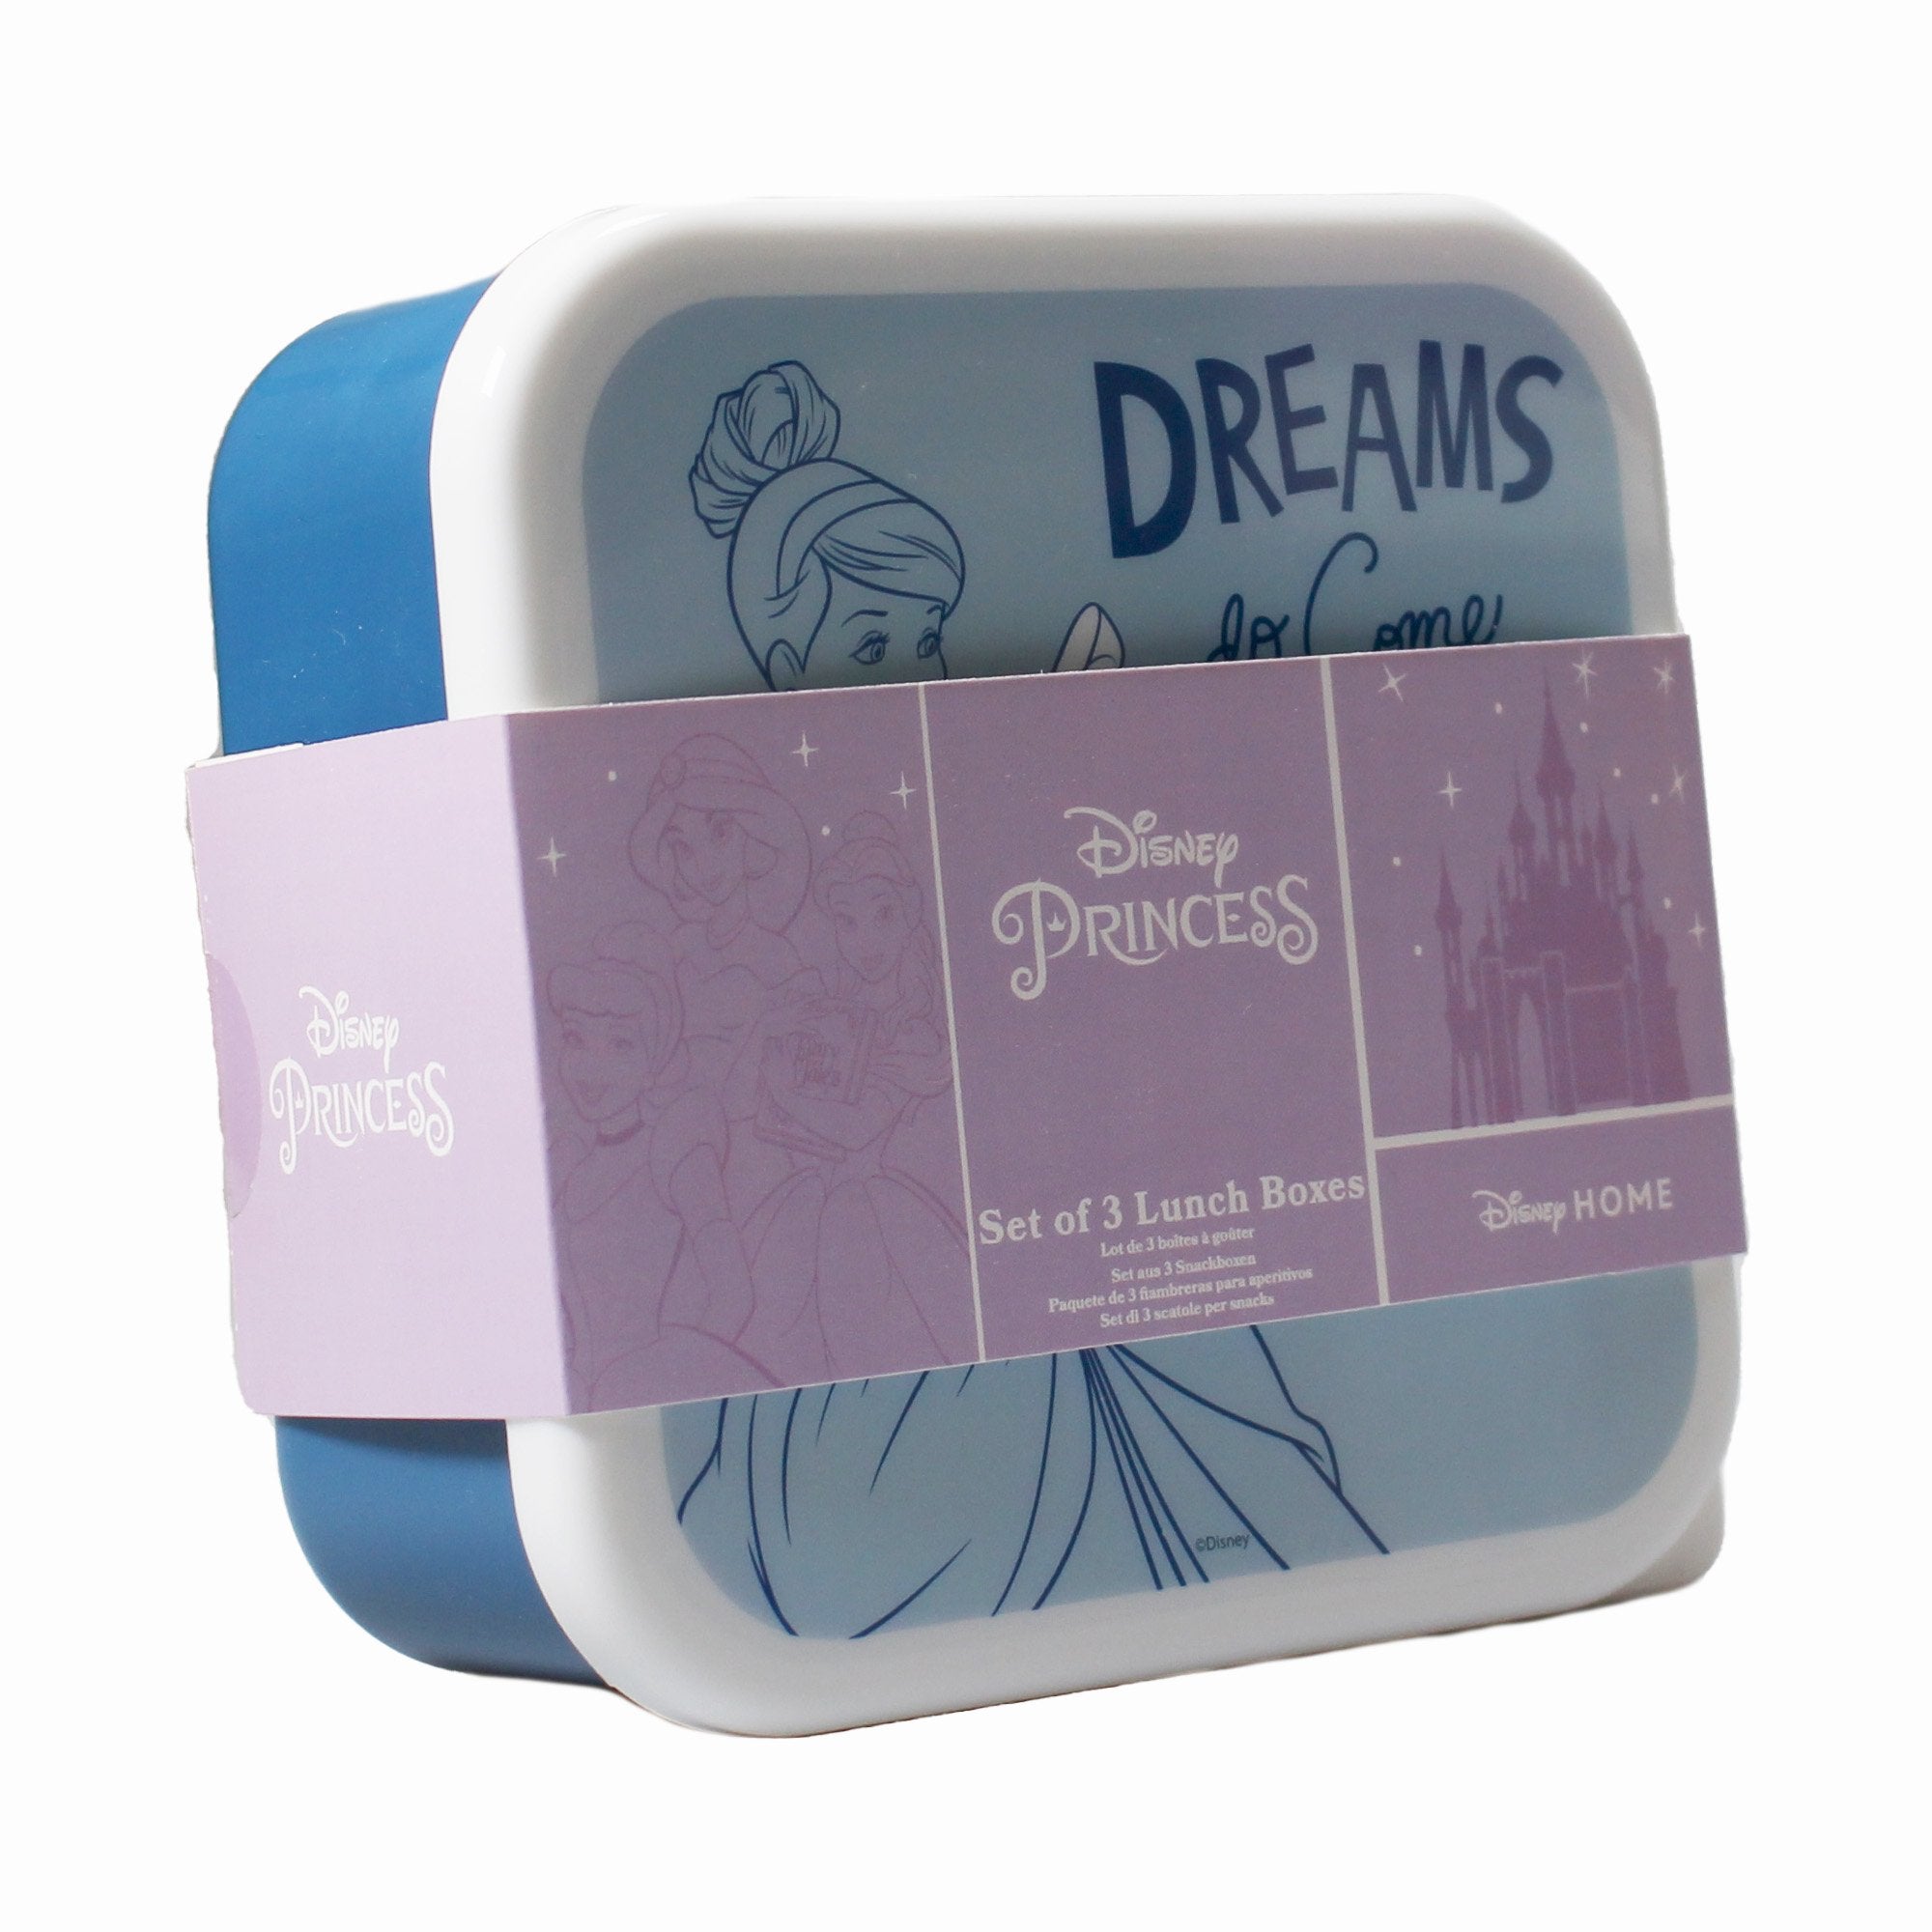 Snack Boxes Set of 3 - Disney Princess (Colour Pop)